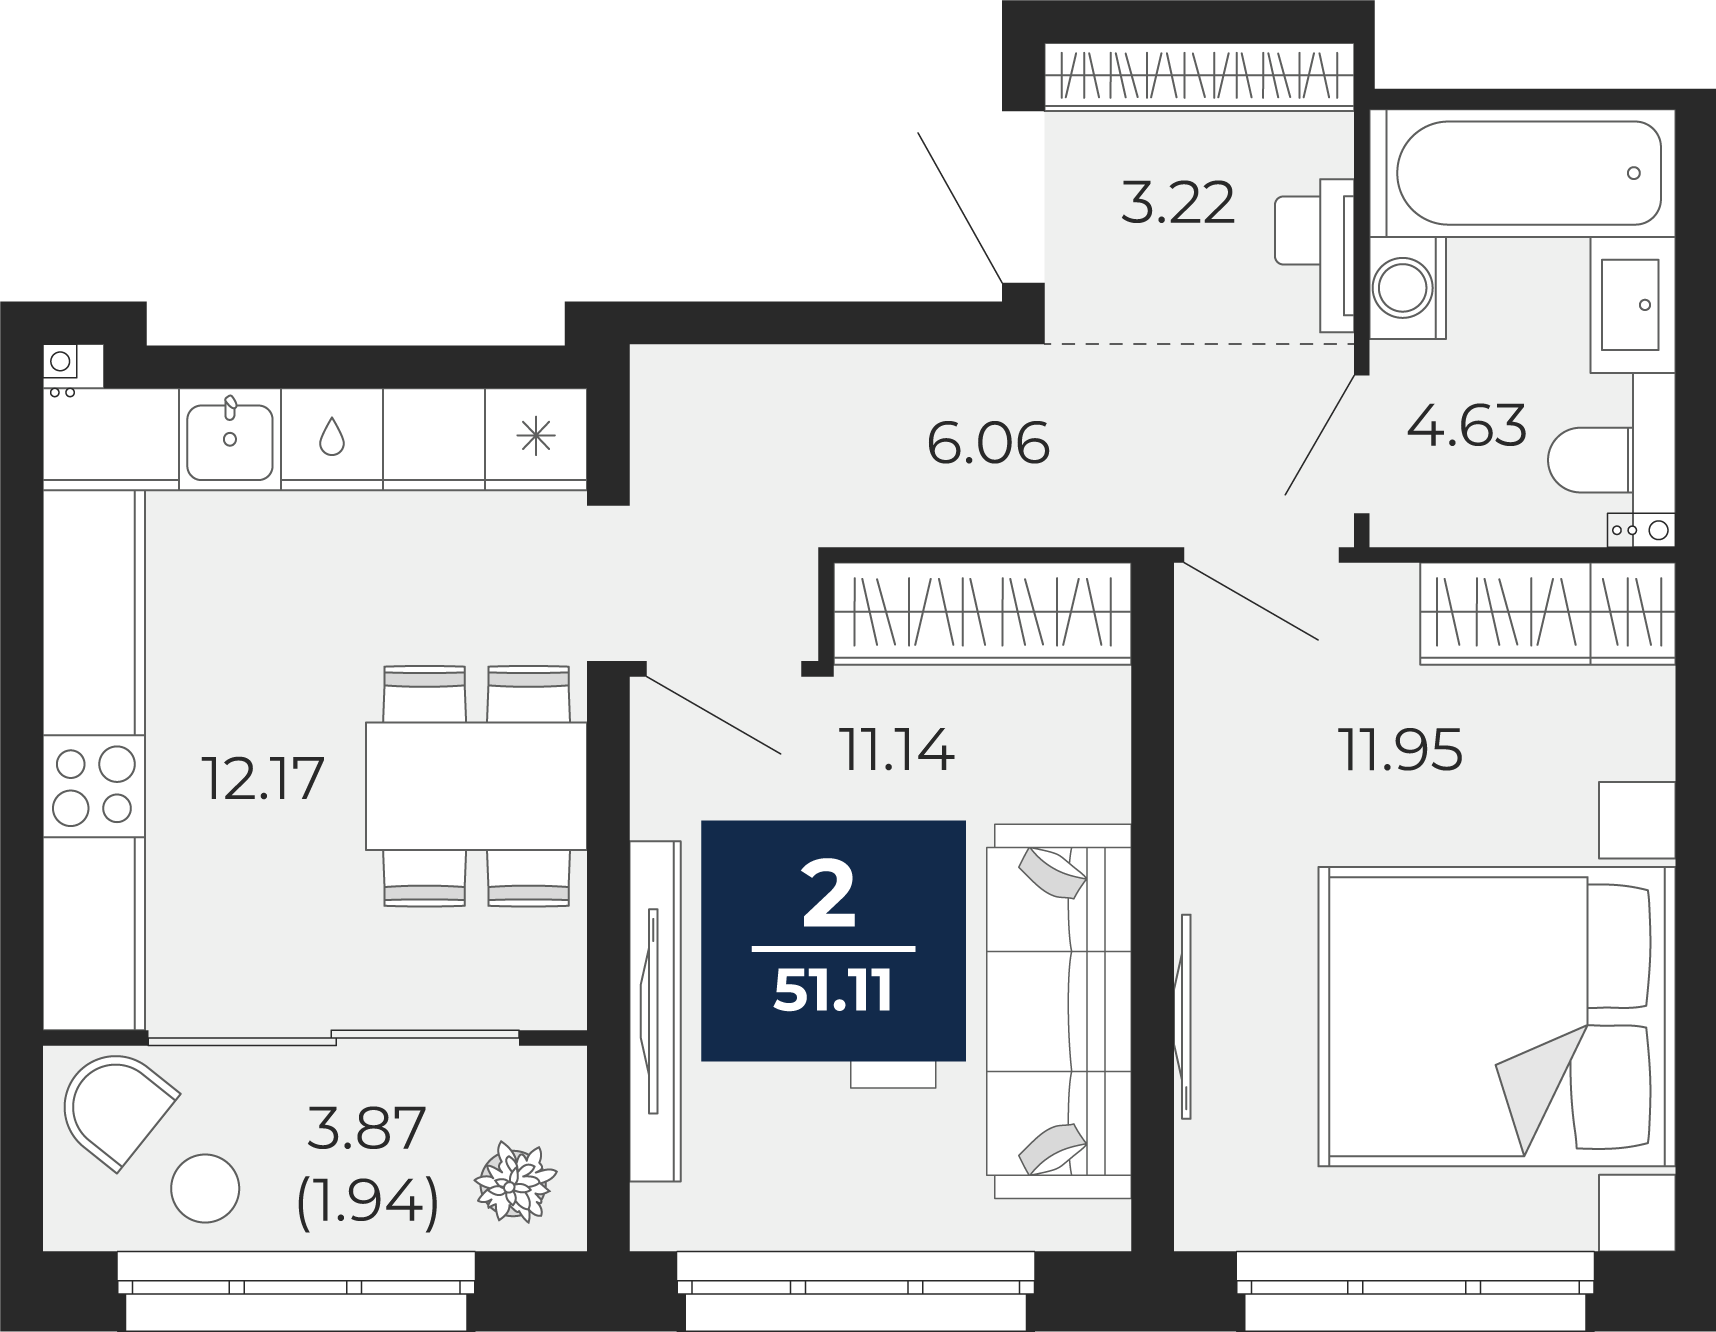 Квартира № 49, 2-комнатная, 51.11 кв. м, 11 этаж